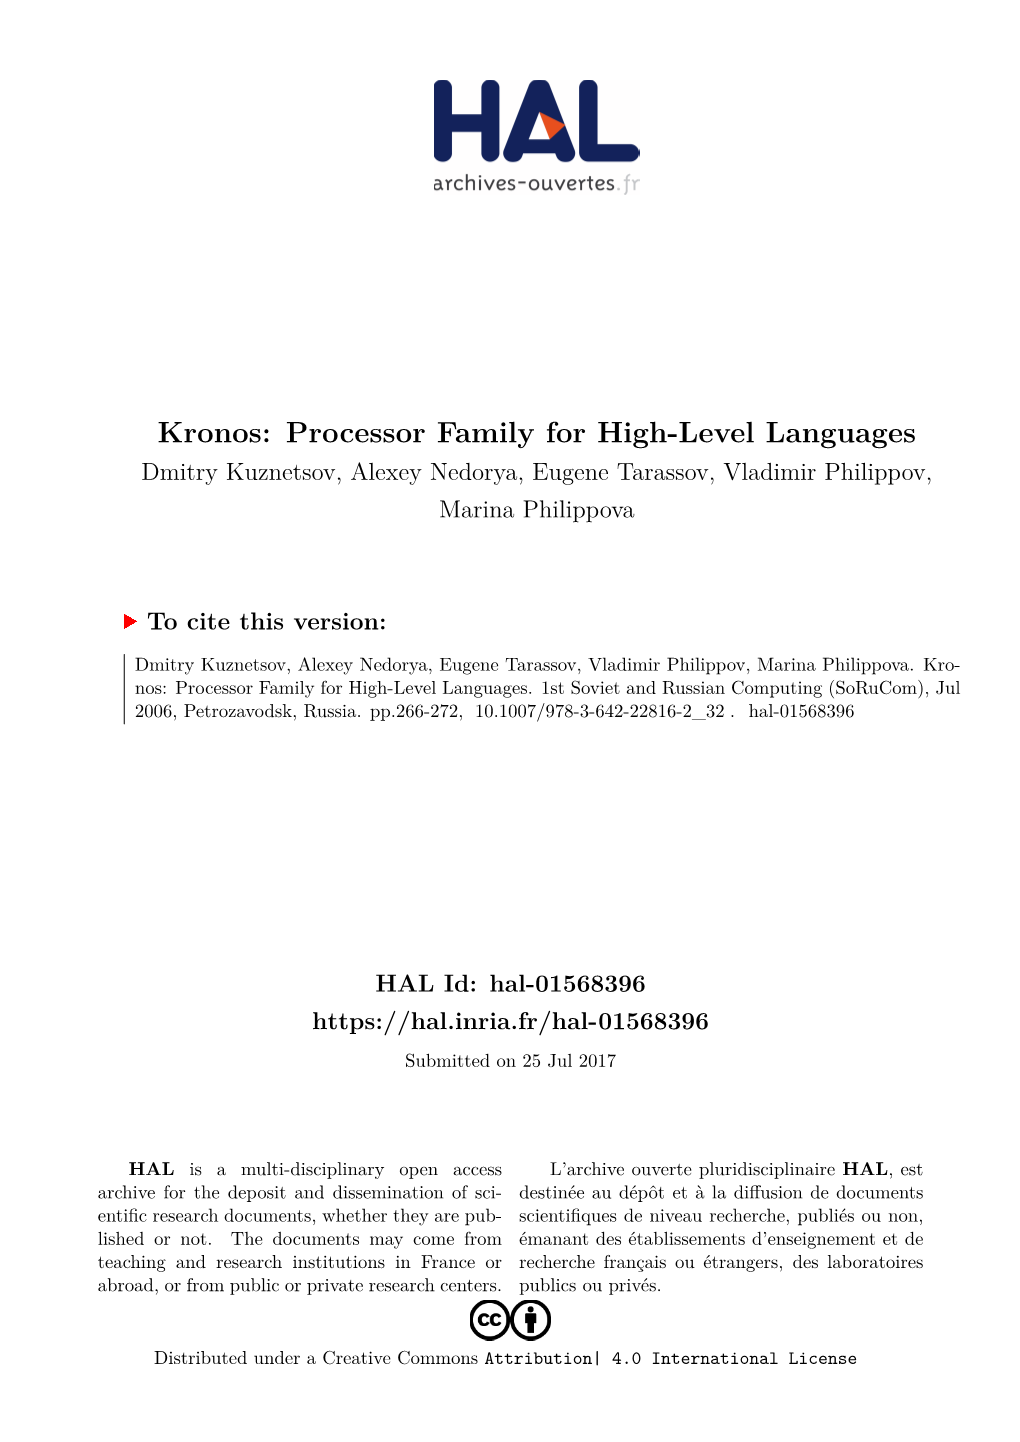 Kronos: Processor Family for High-Level Languages Dmitry Kuznetsov, Alexey Nedorya, Eugene Tarassov, Vladimir Philippov, Marina Philippova